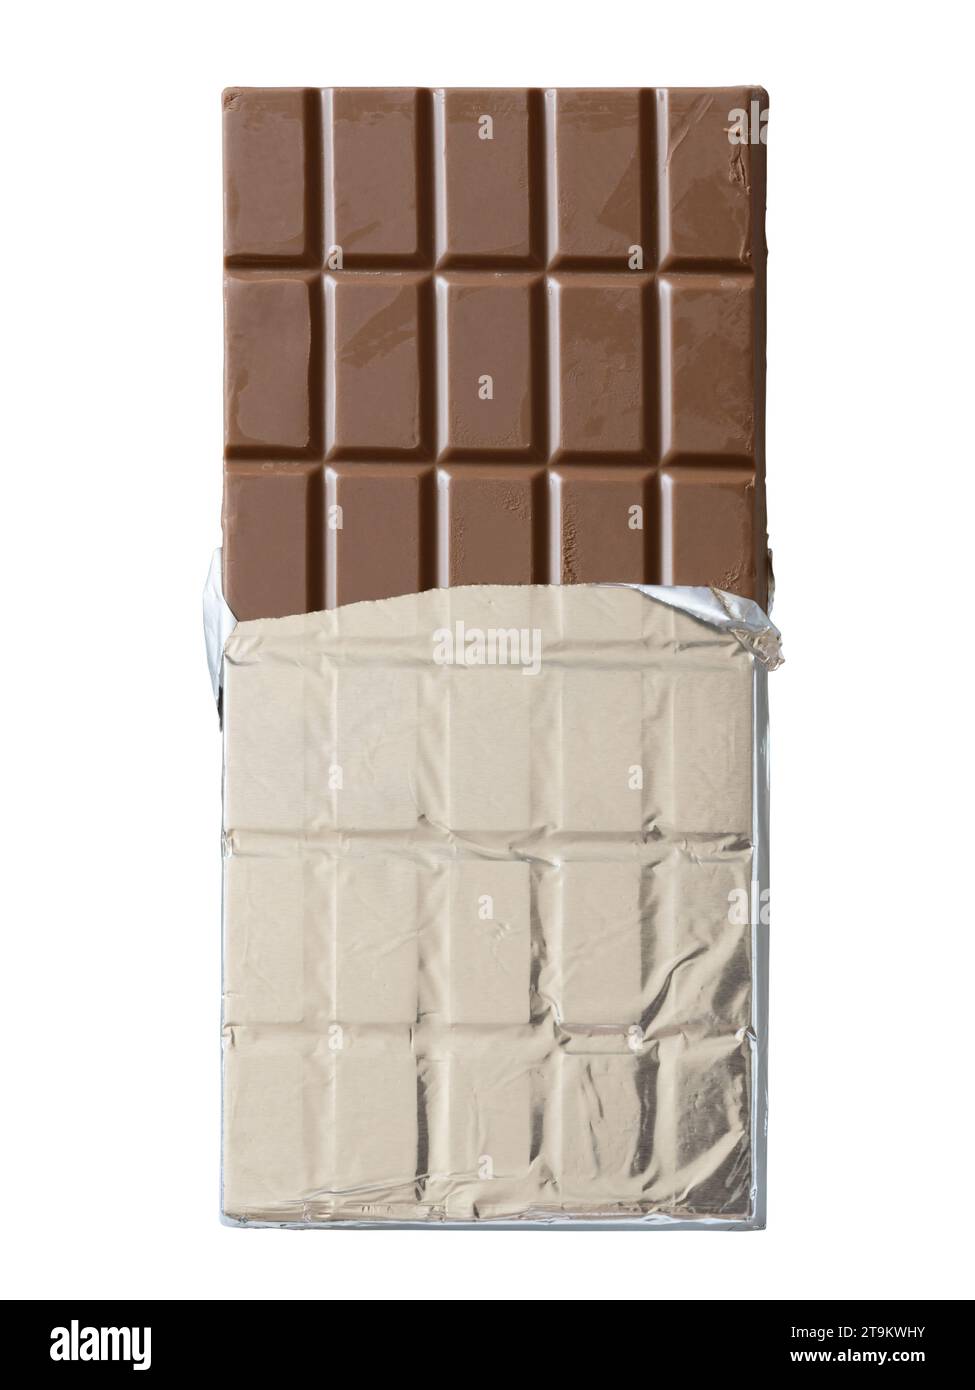 Barre de chocolat enveloppée dans du papier d'aluminium sur fond blanc avec chemin de découpage Banque D'Images